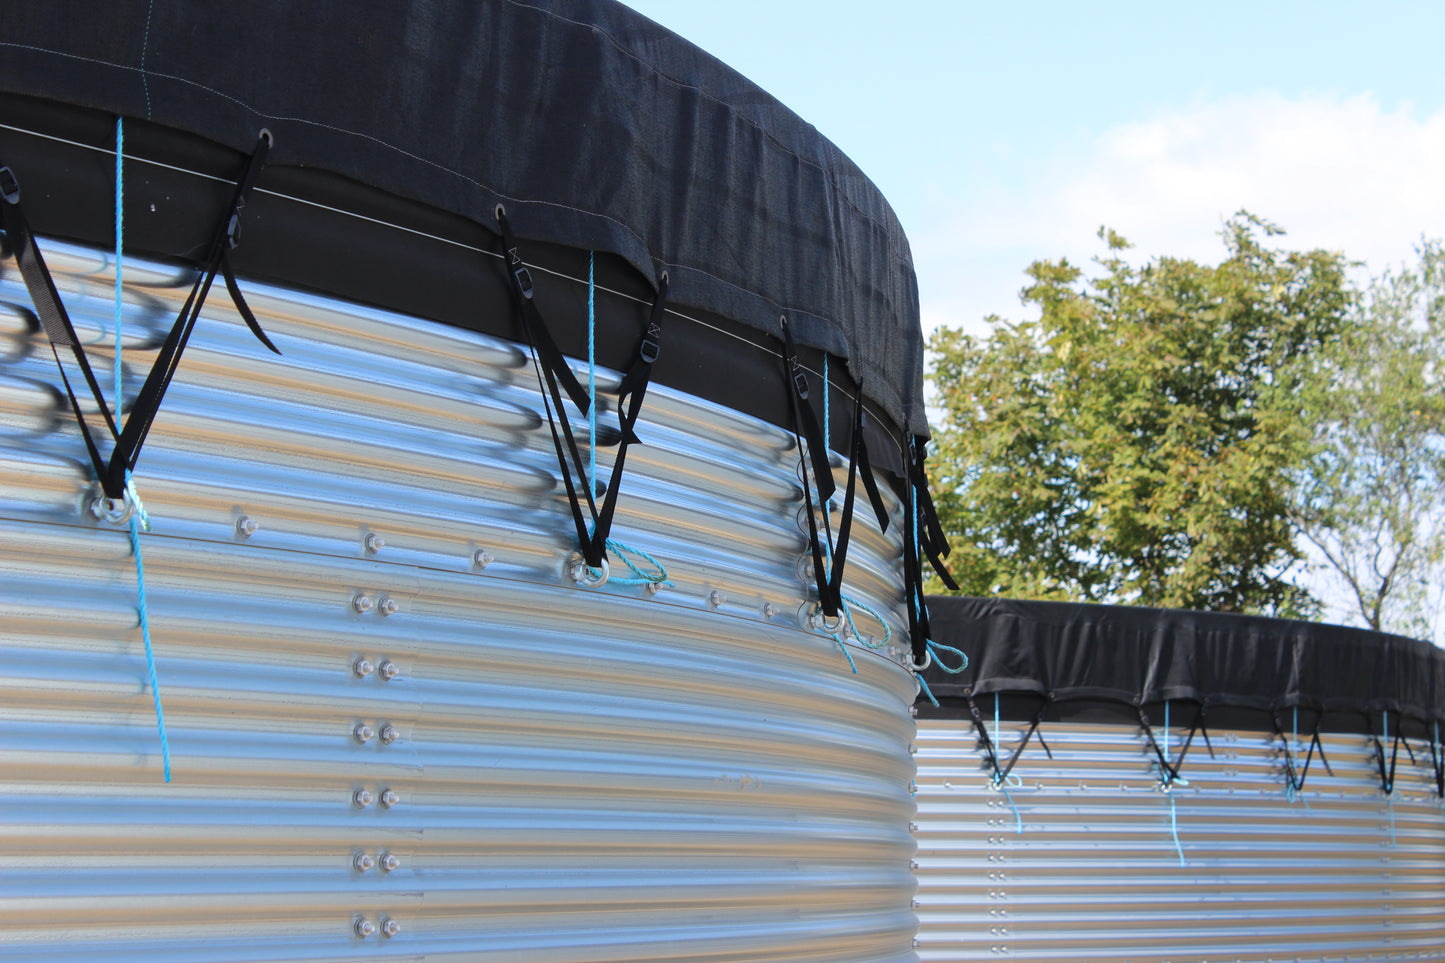 96,000 litre Galvanised Steel Water Tank